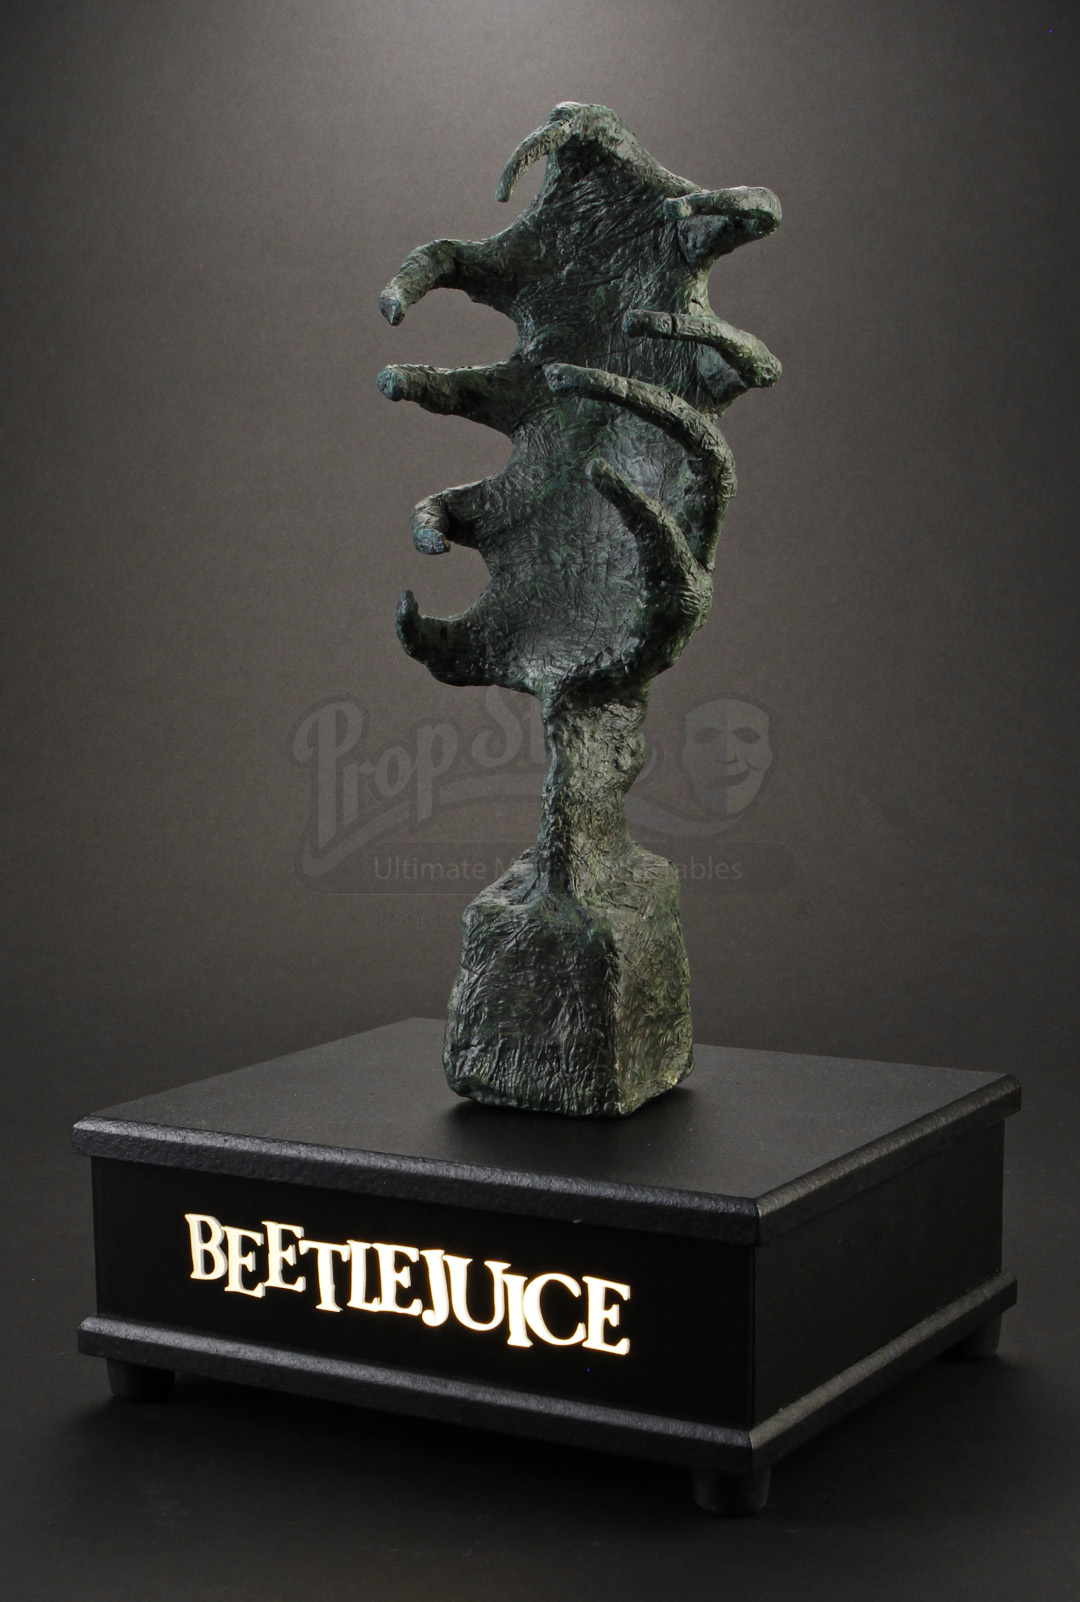 Beetlejuice-movie-prop-delia-sculpture-propstore.jpg